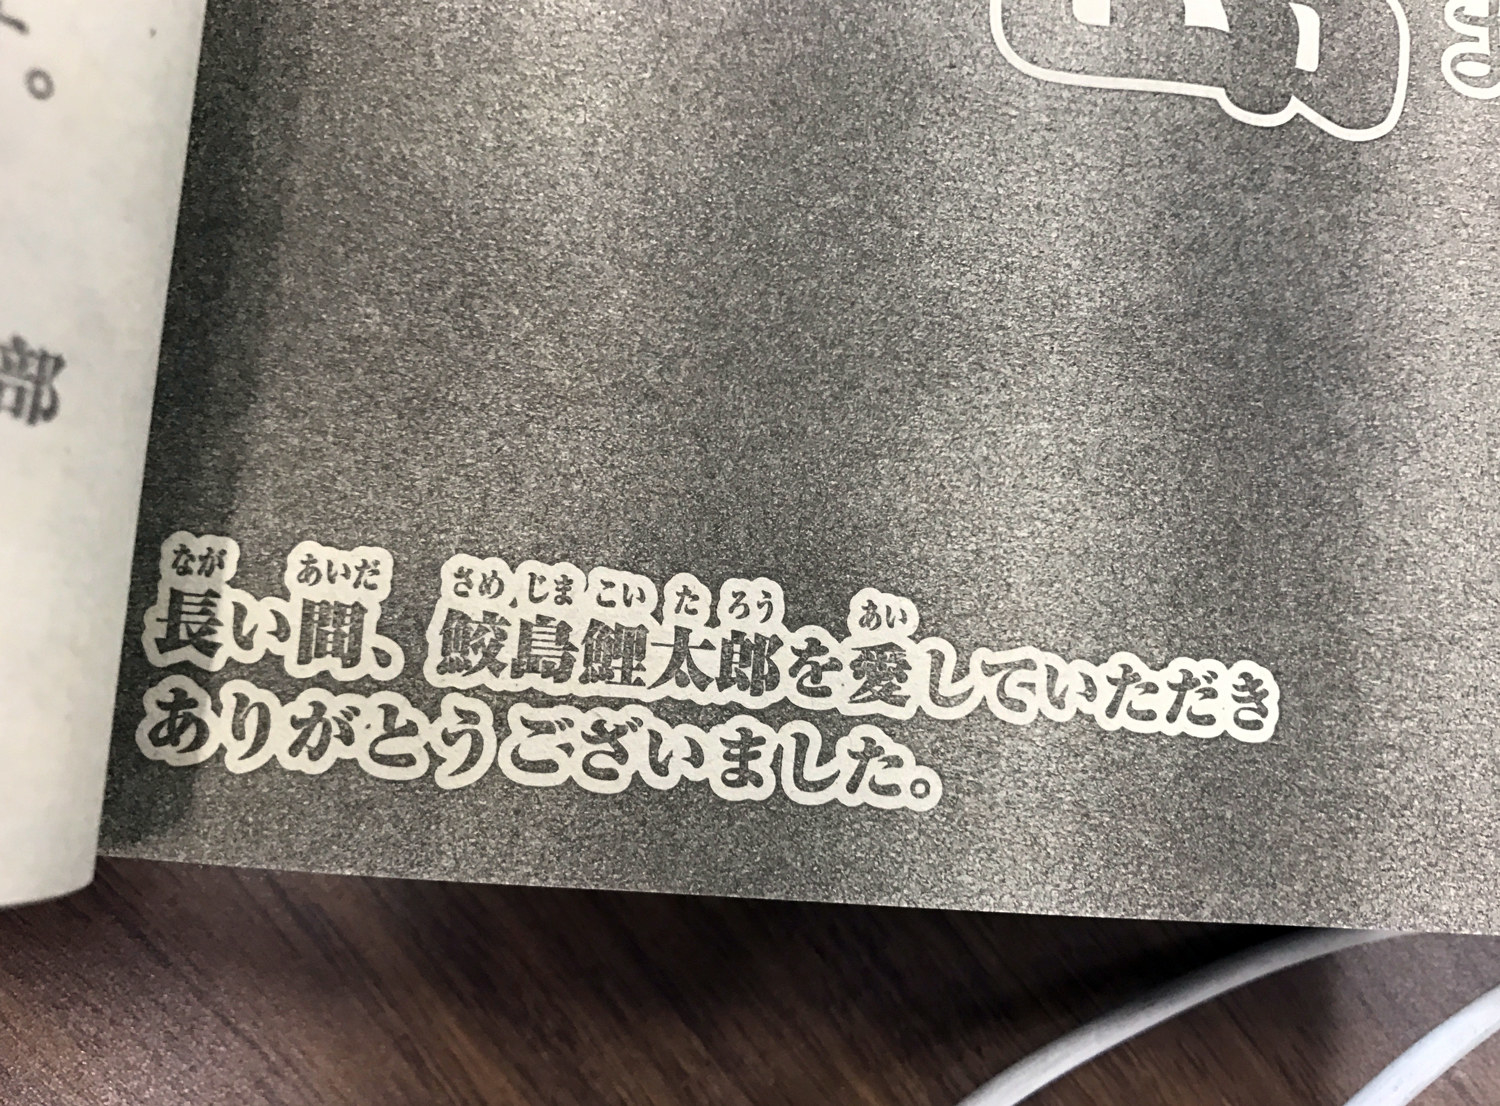 最後の 鮫島 掲載の少年チャンピオン発売 巻末で連載漫画家らが追悼コメント